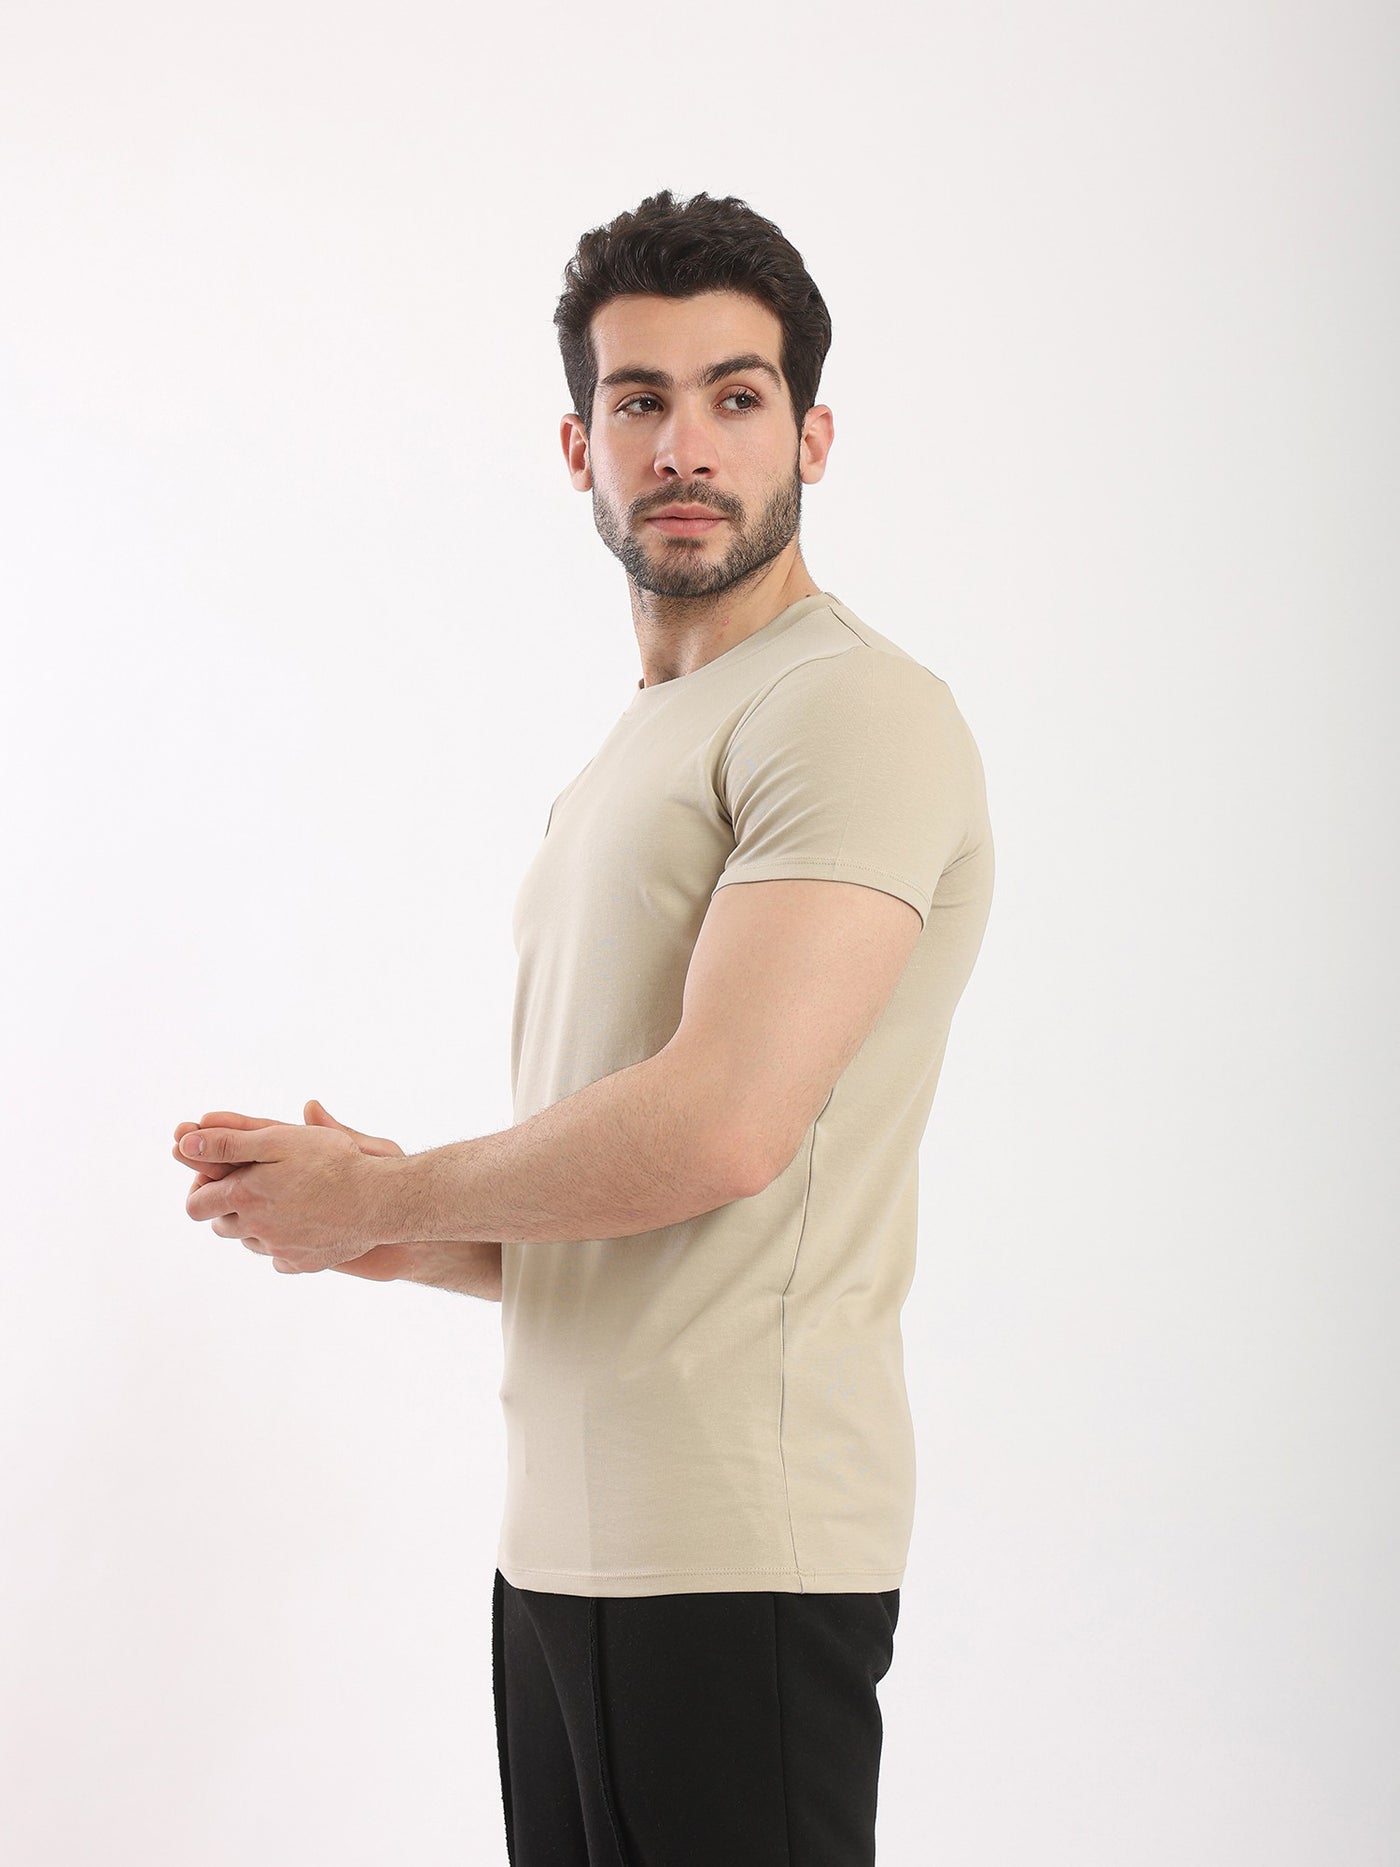 T-Shirt - Basic - Plain